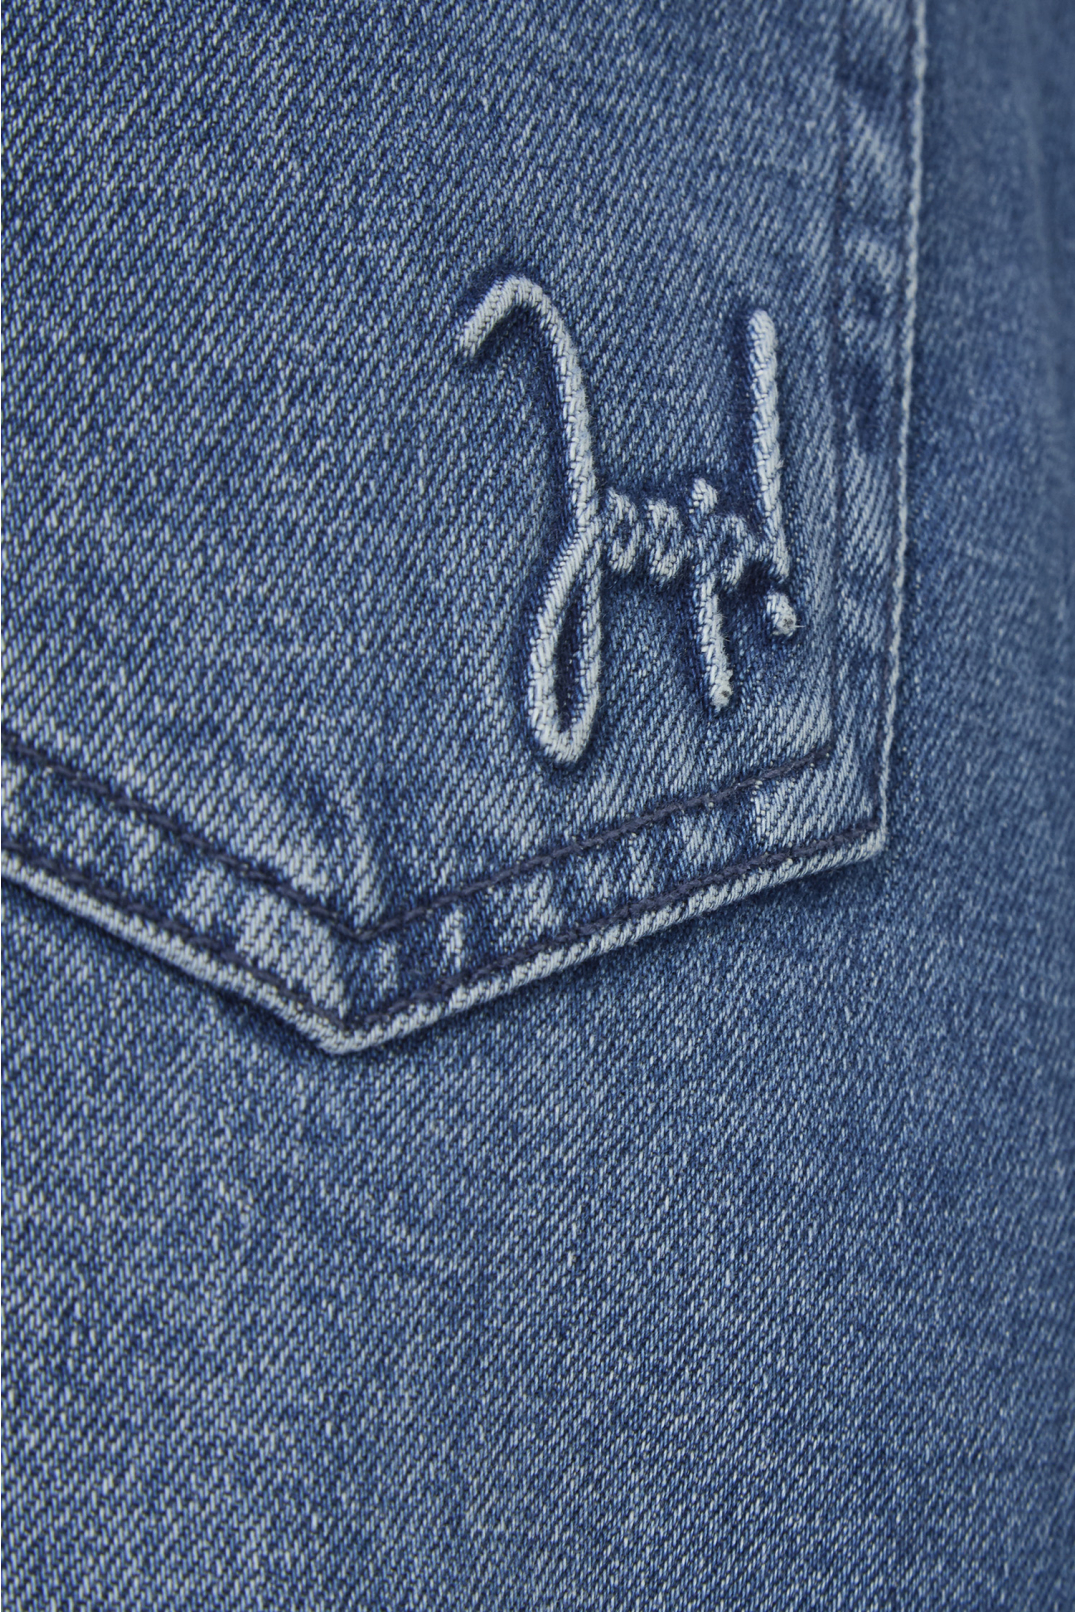 Жіноча синя джинсова спідниця - 4